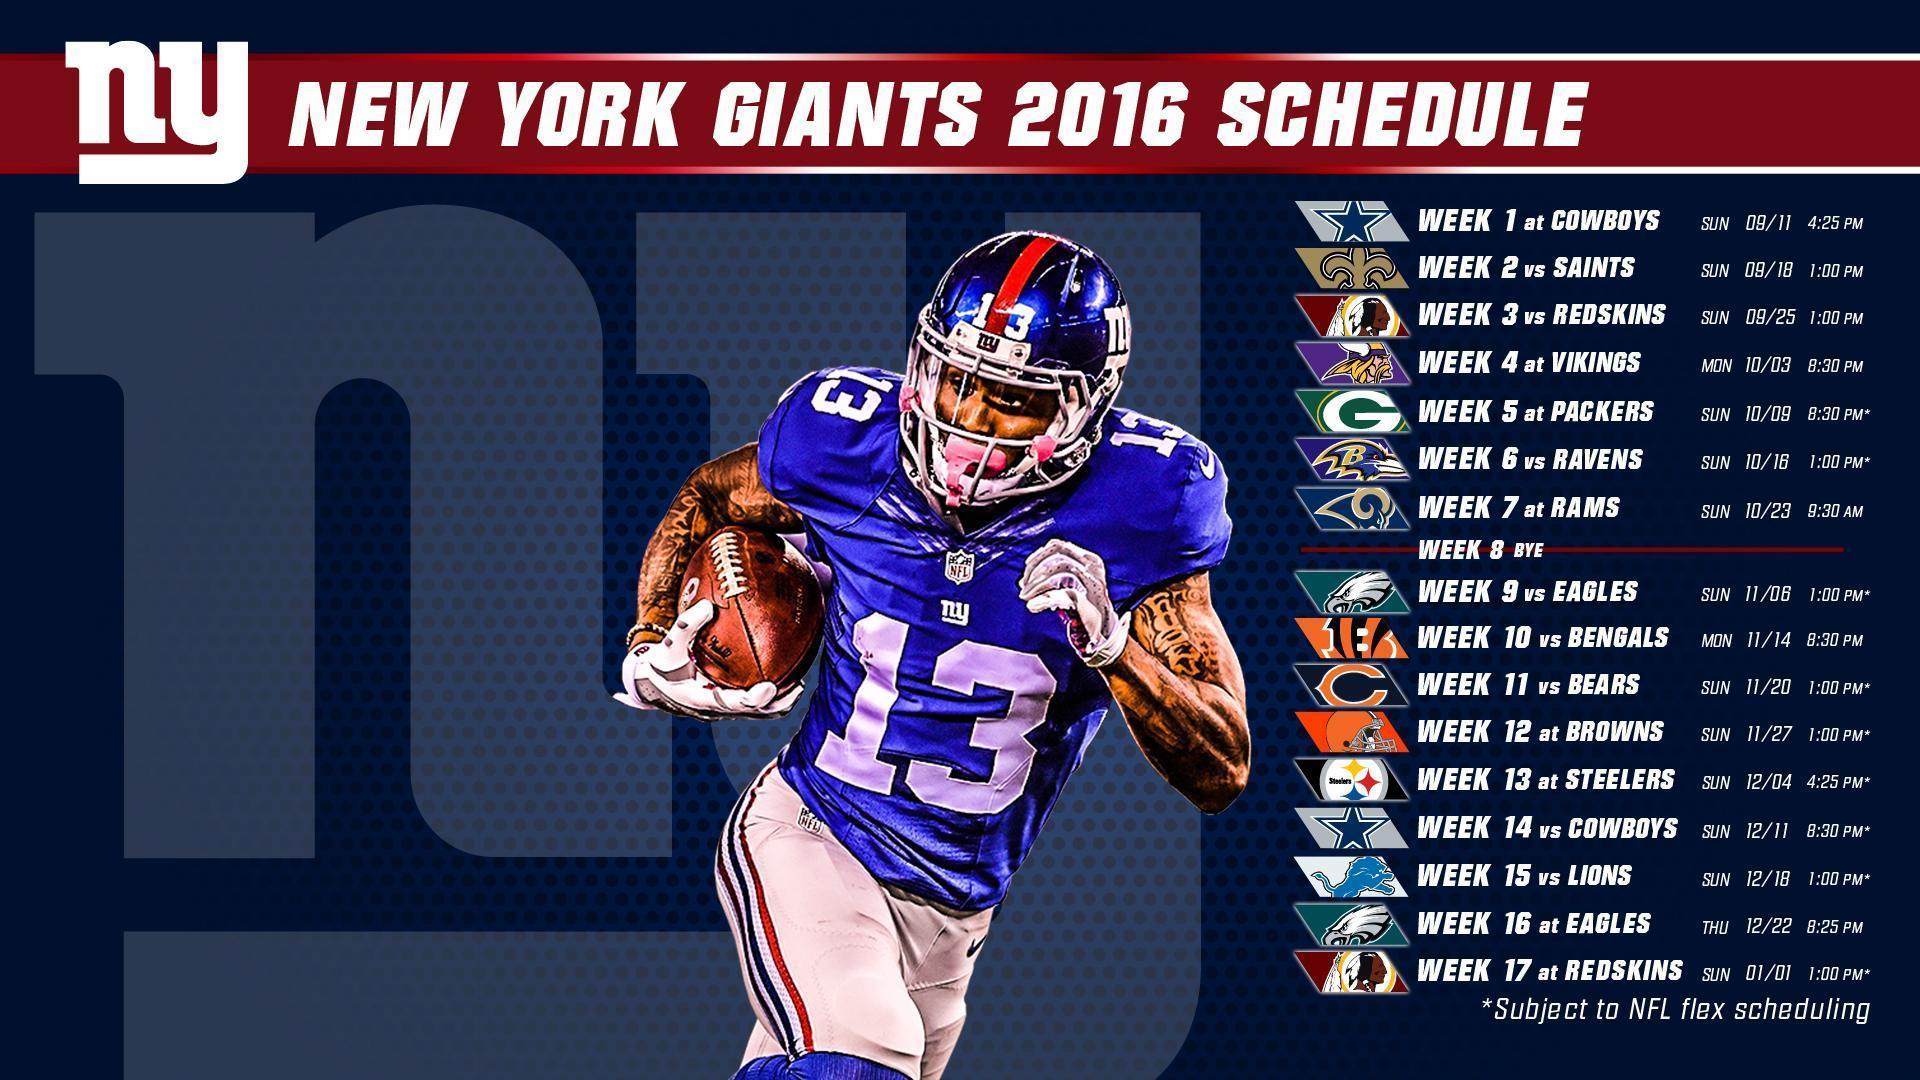 Download the Giants 2016 schedule desktop wallpaper